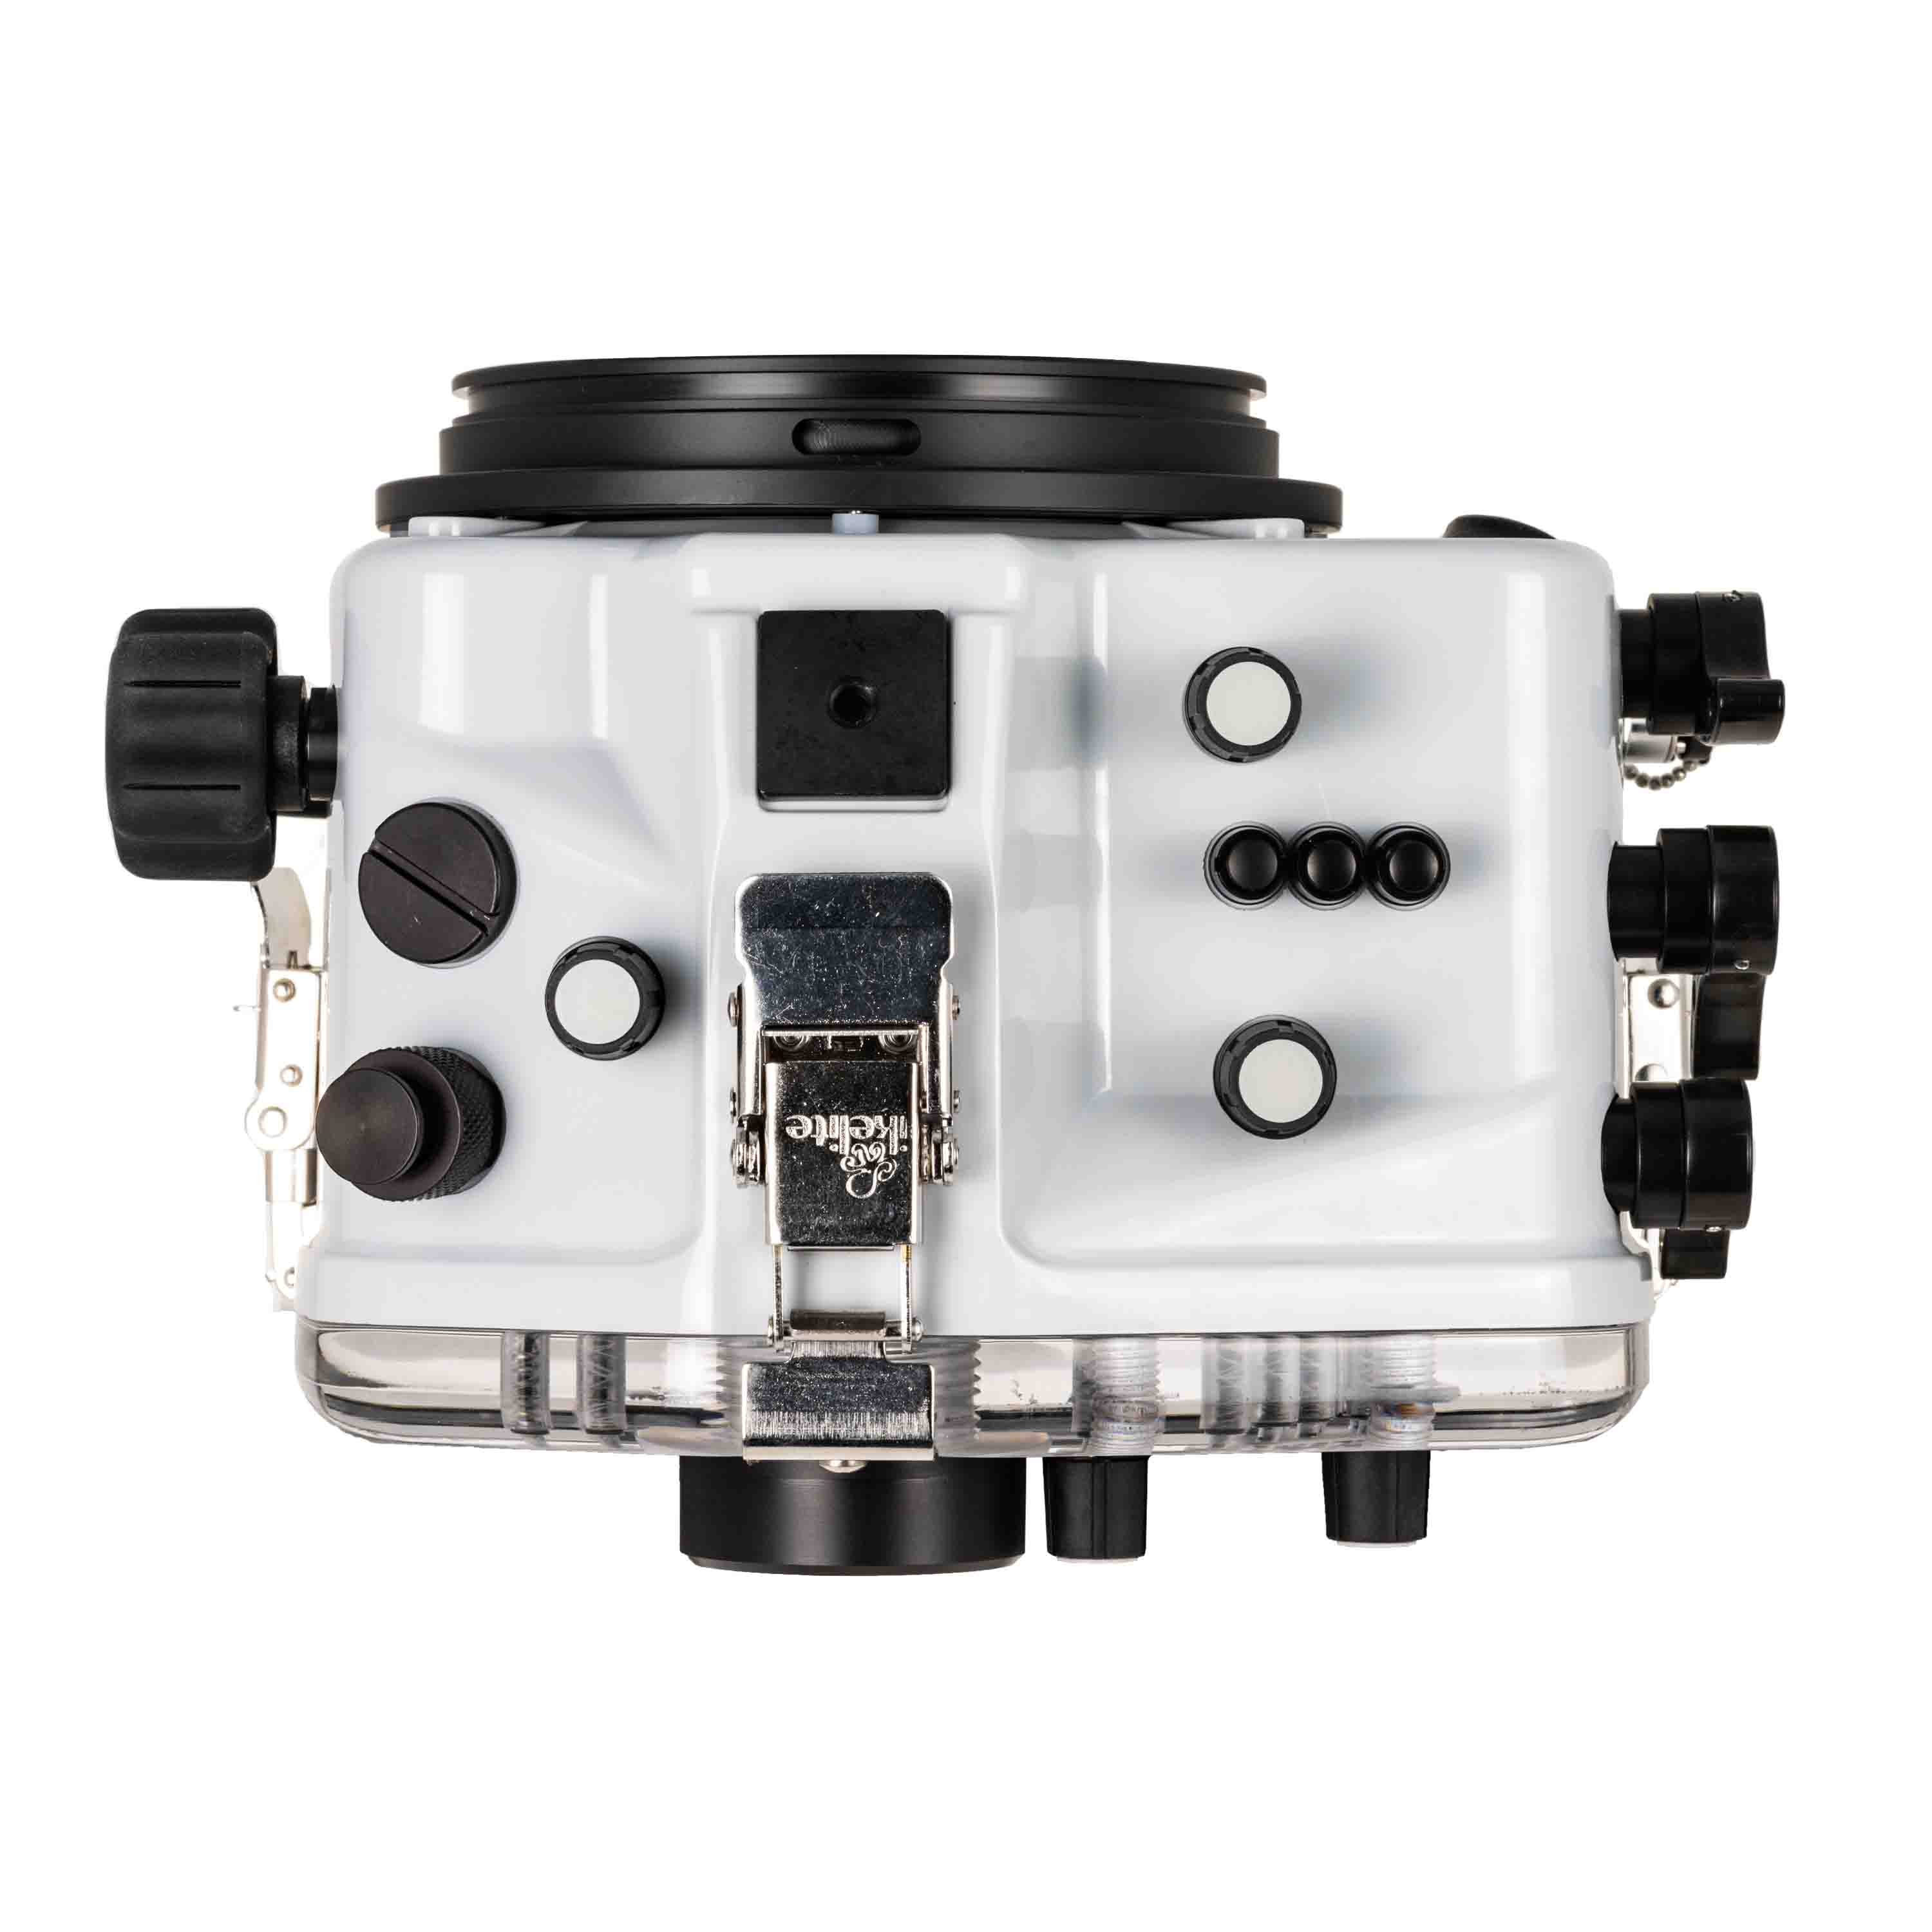 Ikelite 200DL Underwater Housing for Panasonic Lumix S5 II Mirrorless Digital Cameras